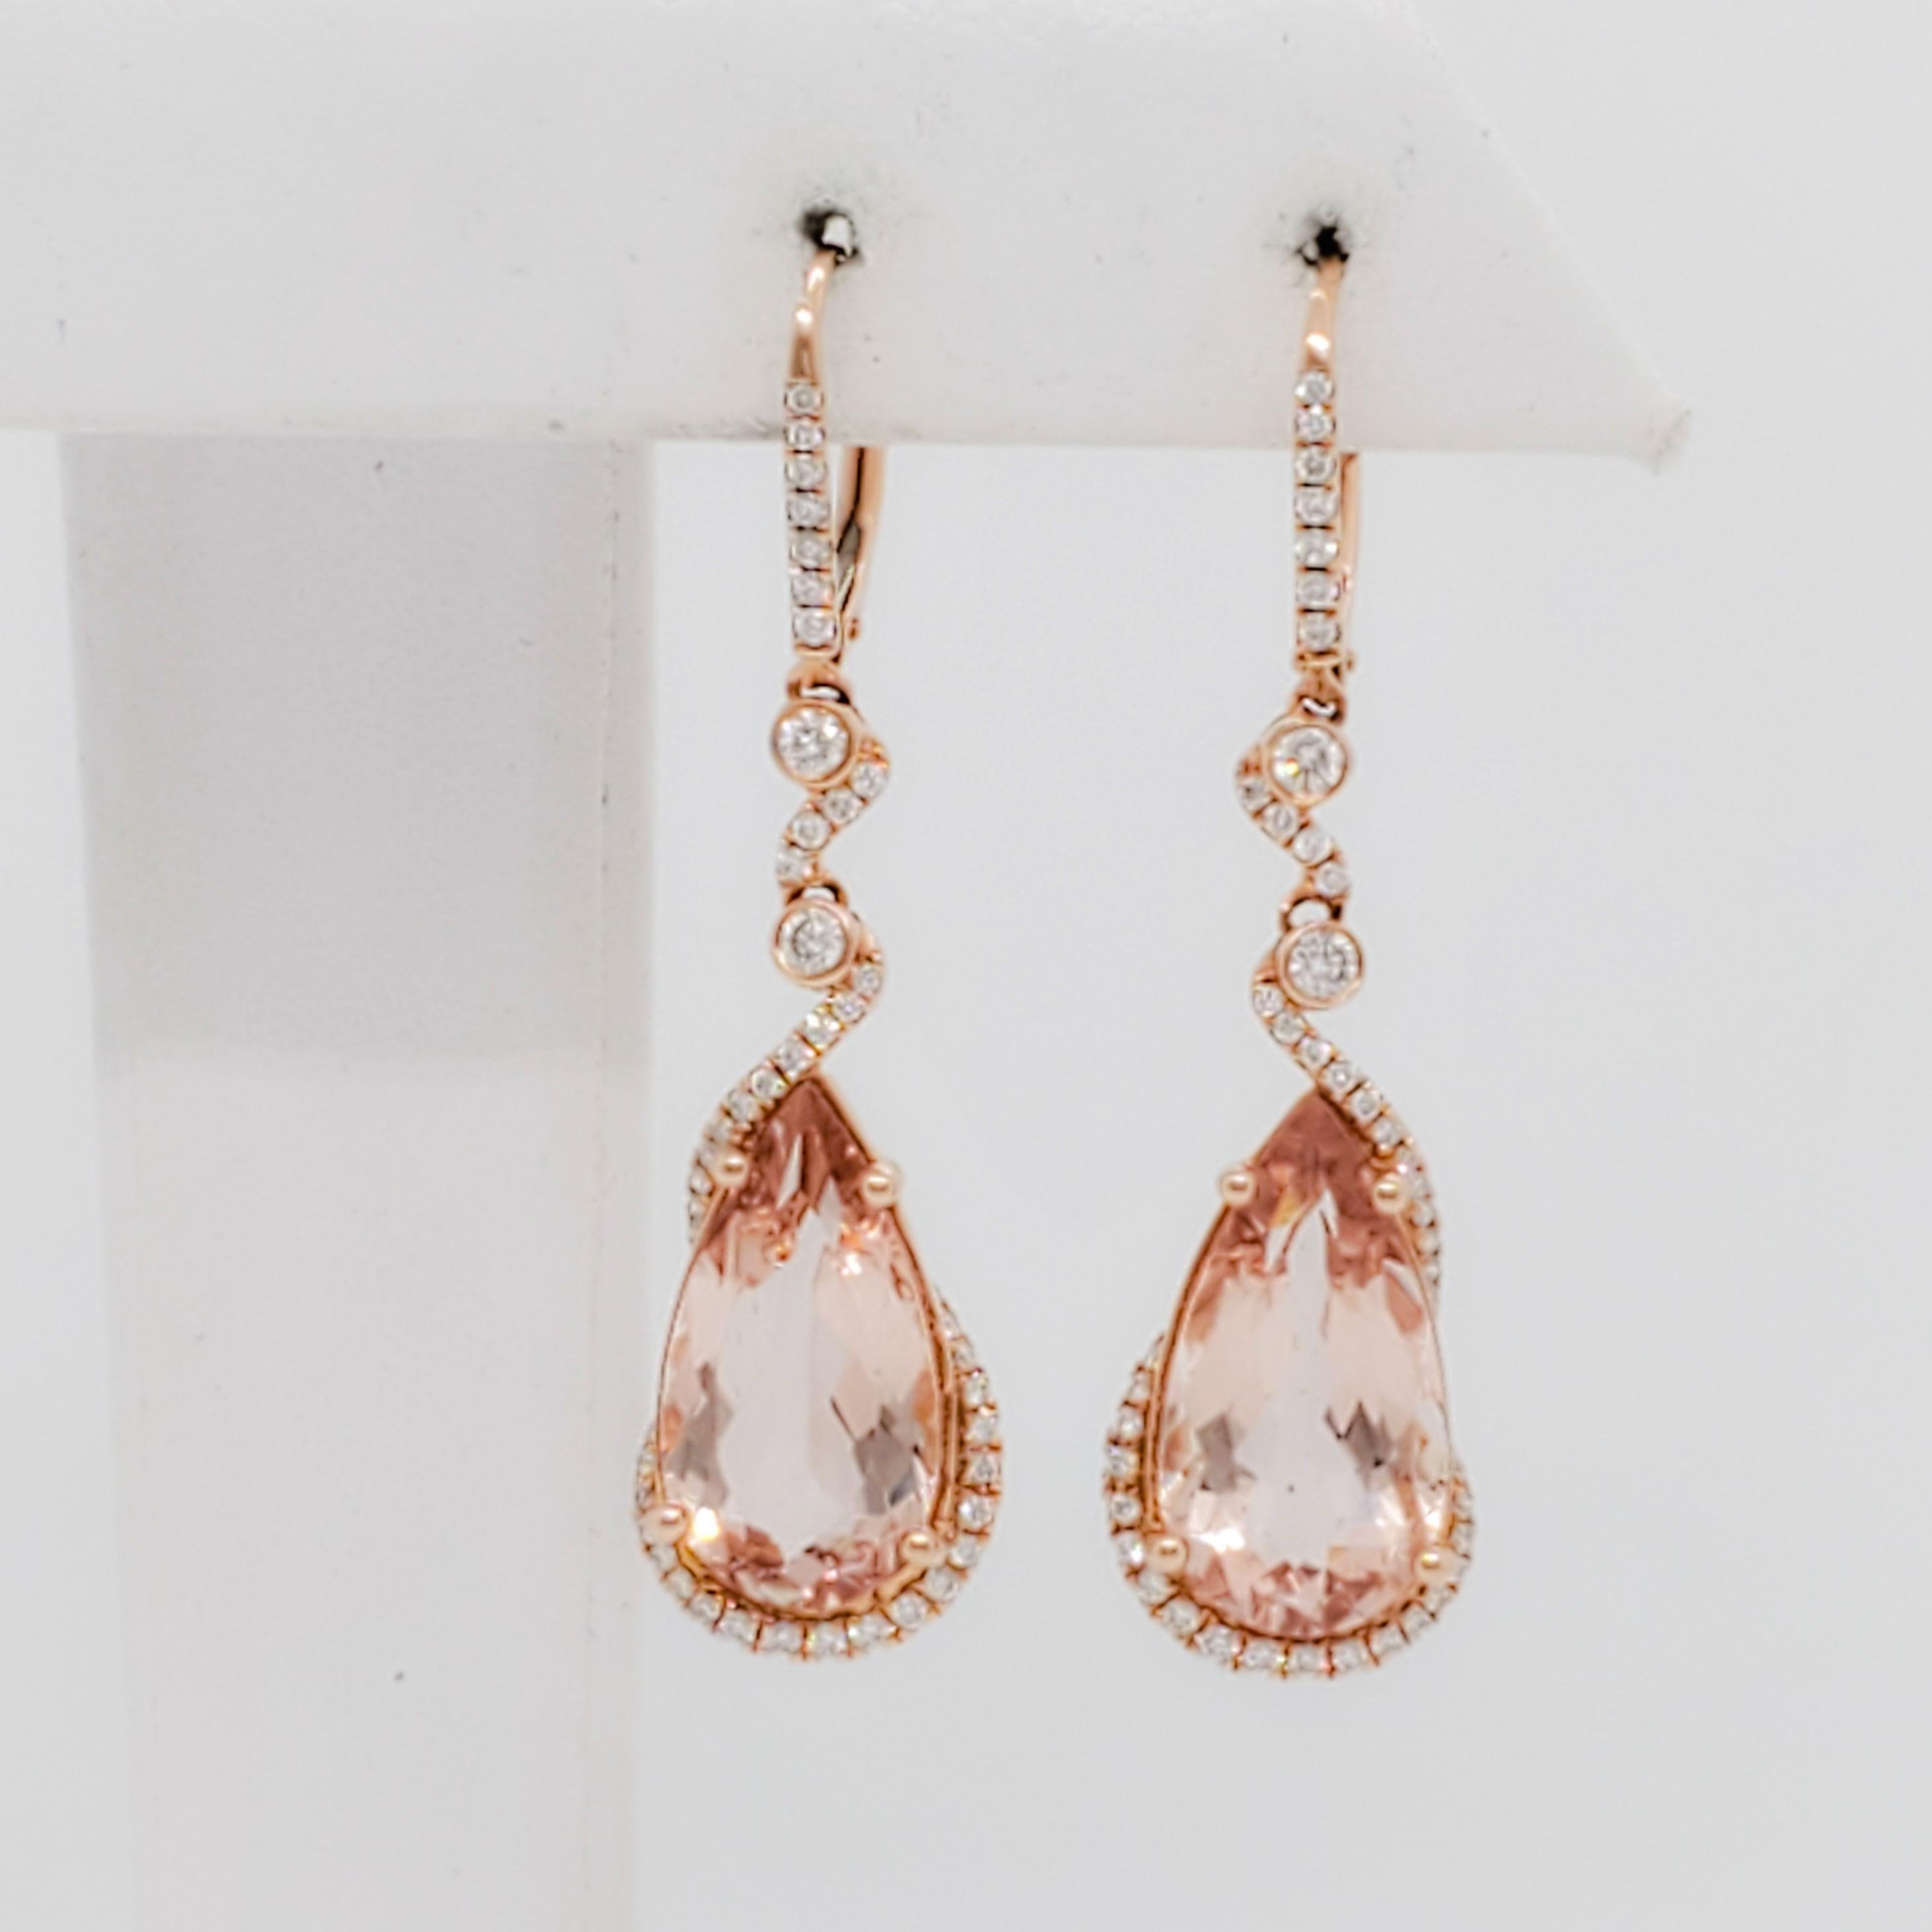 Rose Cut Morganite and Diamond Dangle Earrings in 14k Rose Gold